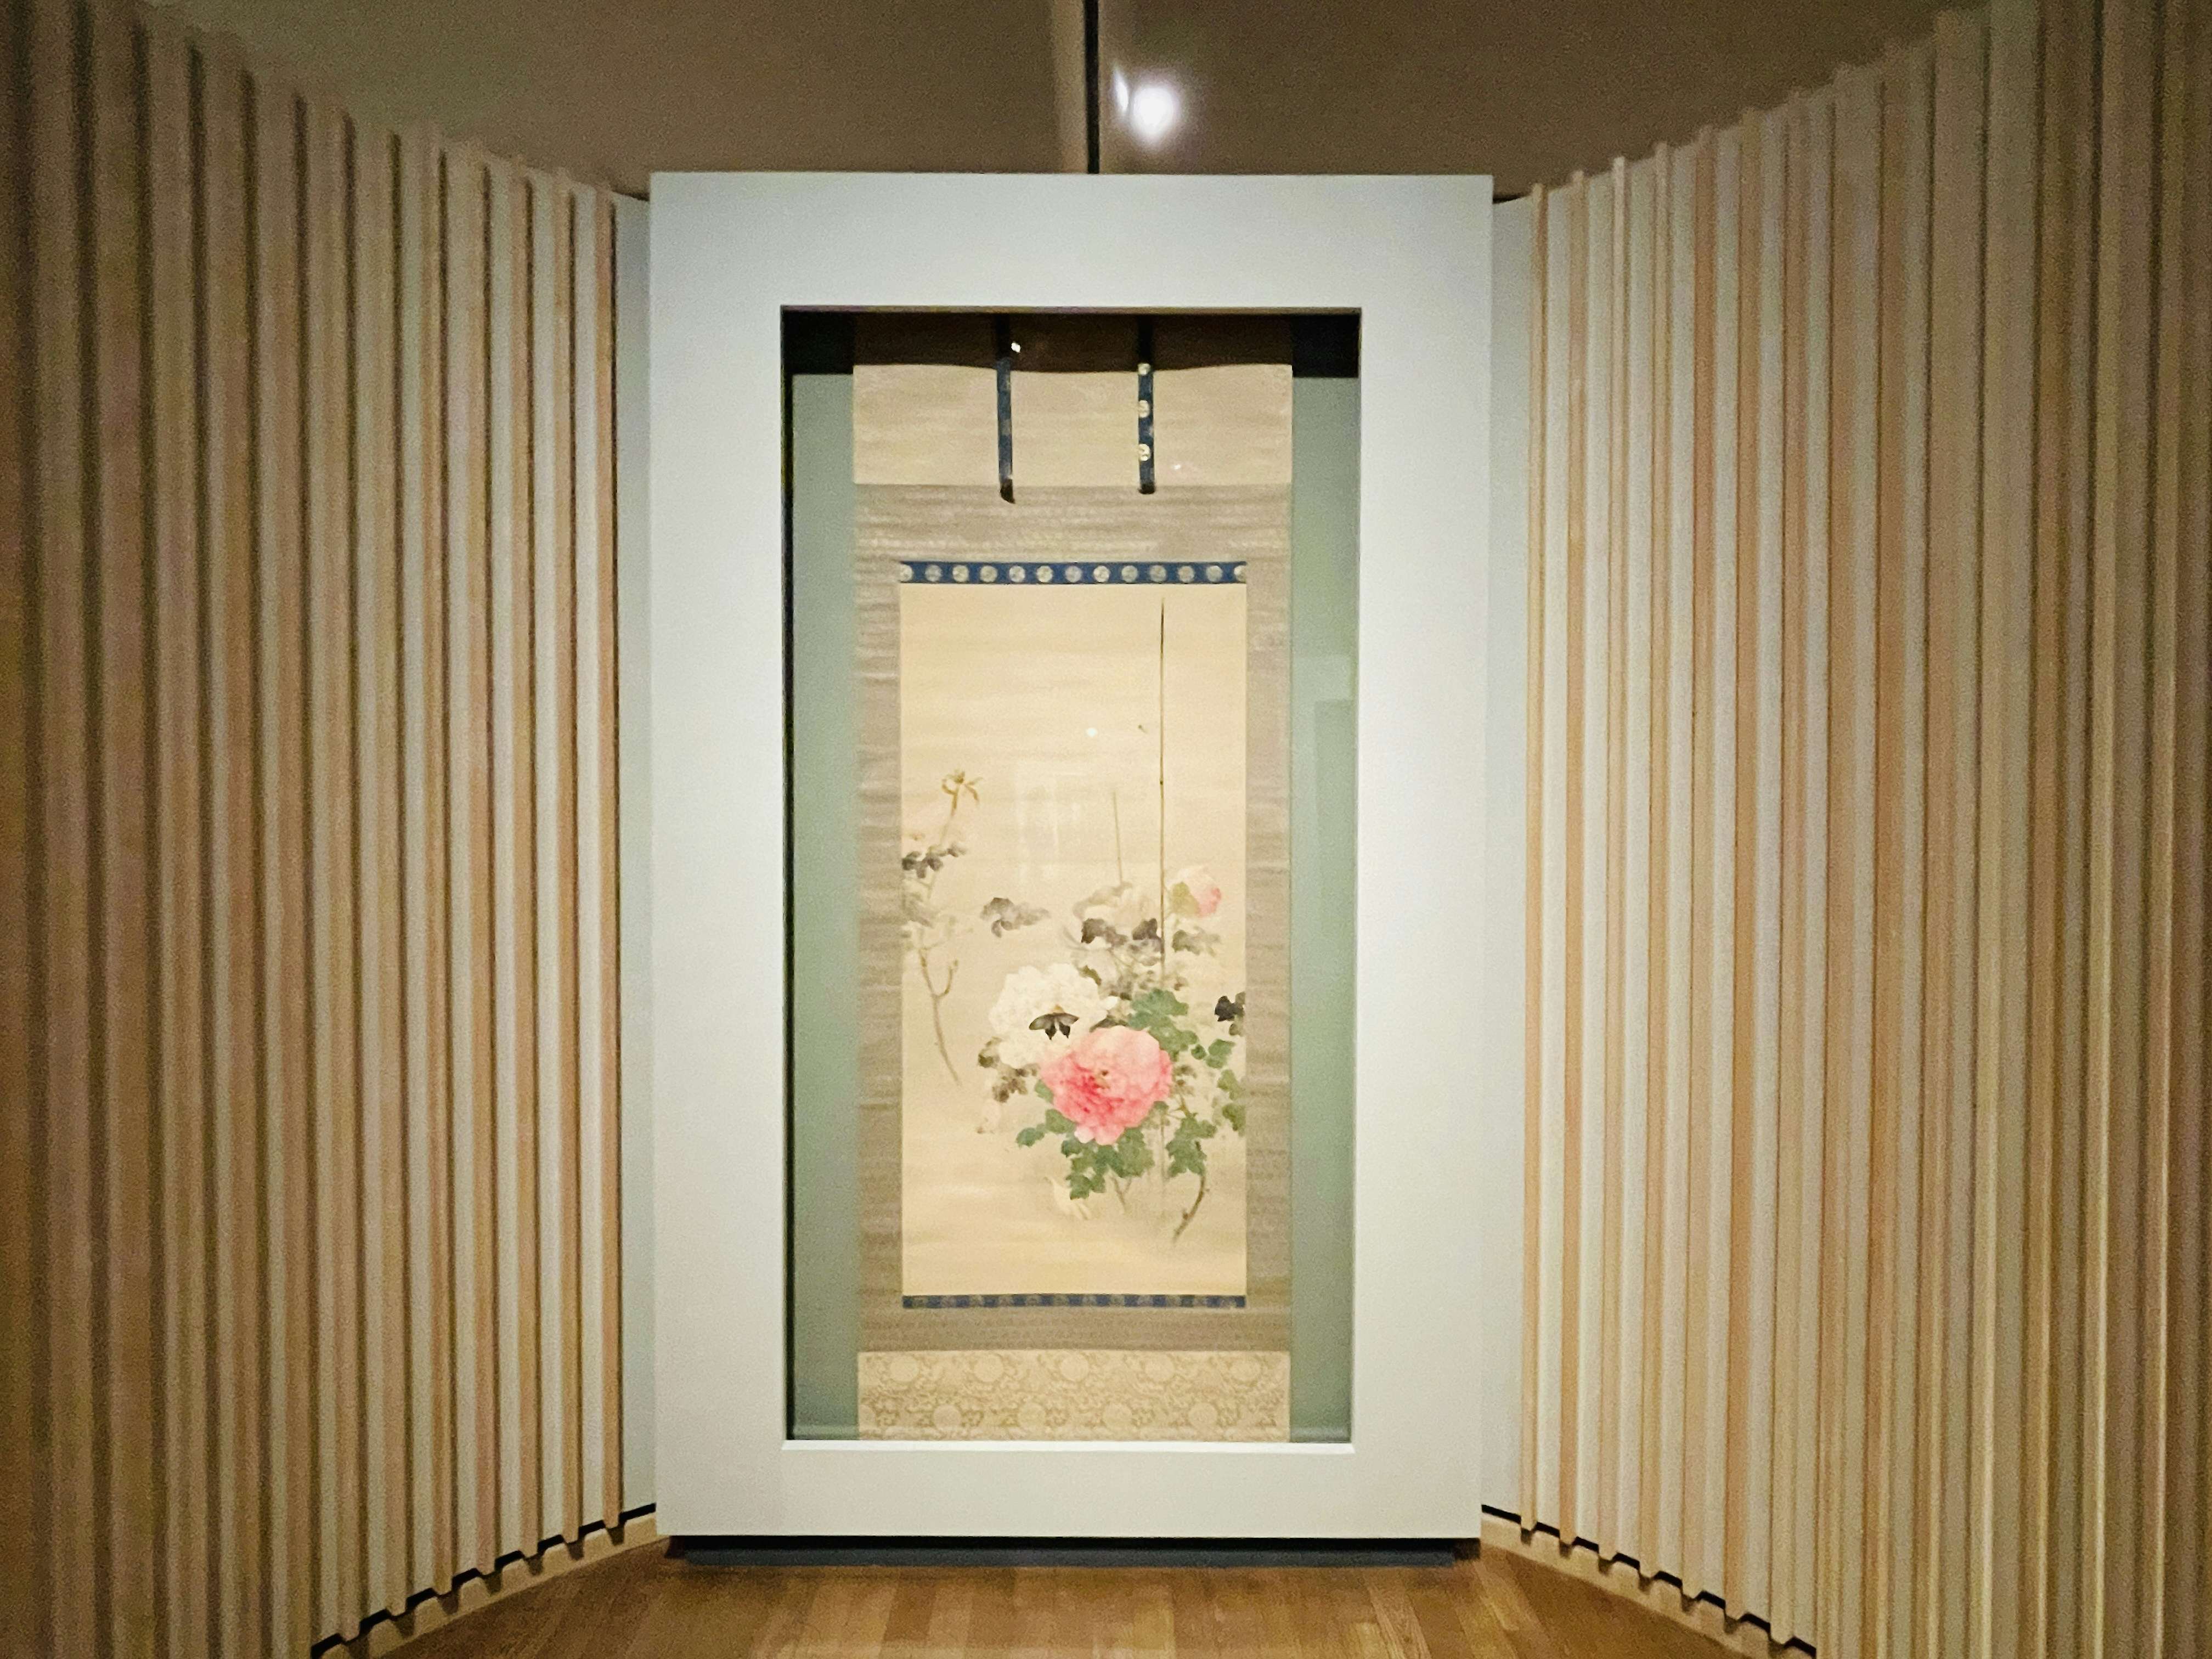 ドガも魅了した画家・渡辺省亭。国内美術館で初の回顧展が東京藝術大学 